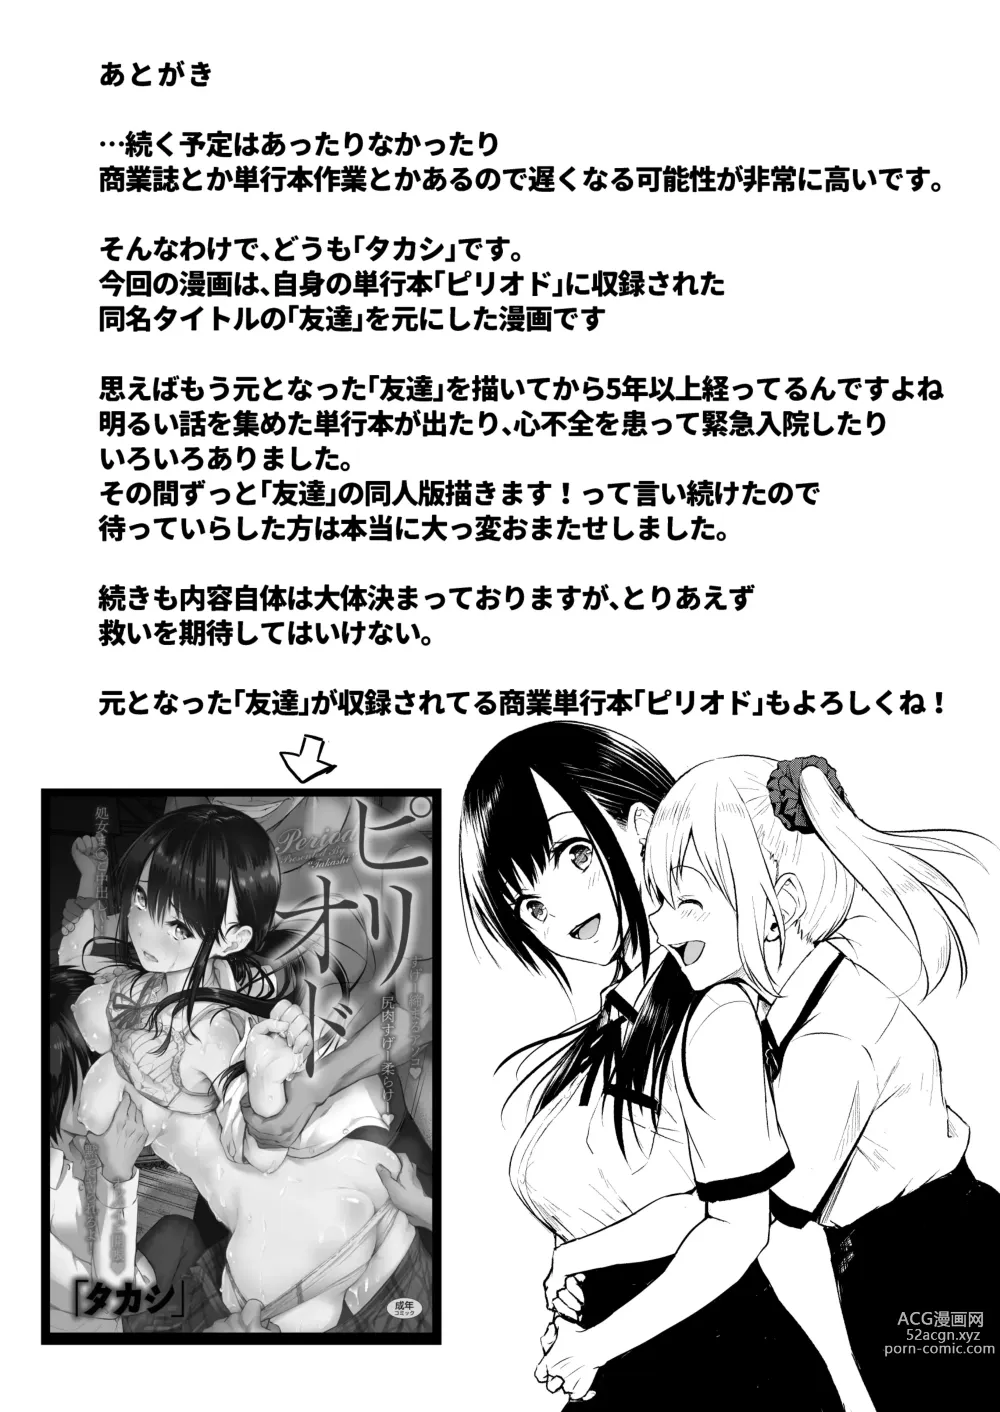 Page 84 of doujinshi Tomodachi